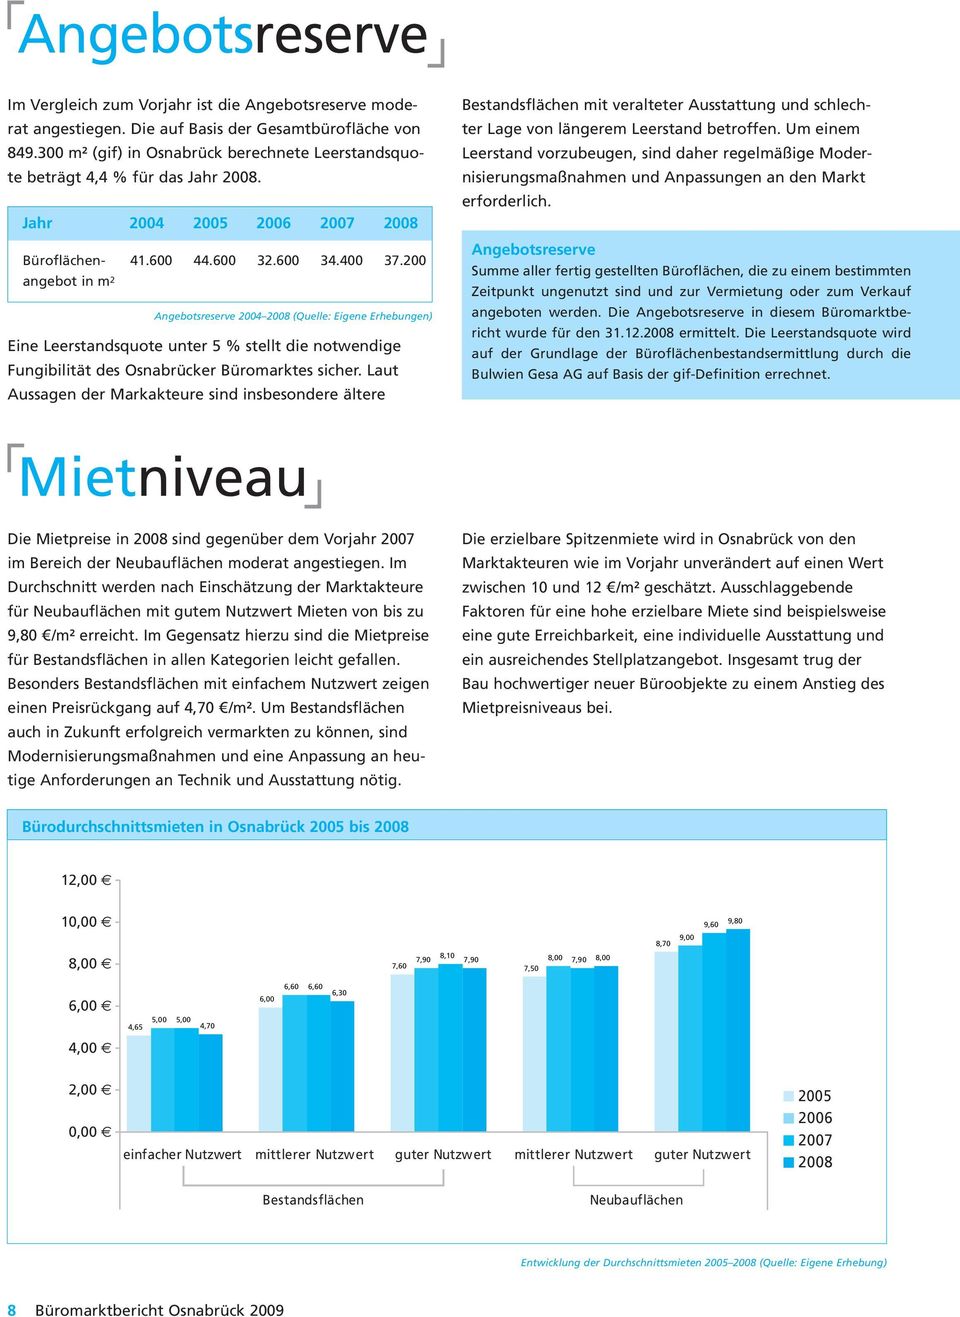 200 angebot in m 2 Angebotsreserve 2004 2008 (Quelle: Eigene Erhebungen) Eine Leerstandsquote unter 5 % stellt die notwendige Fungibilität des Osnabrücker Büromarktes sicher.